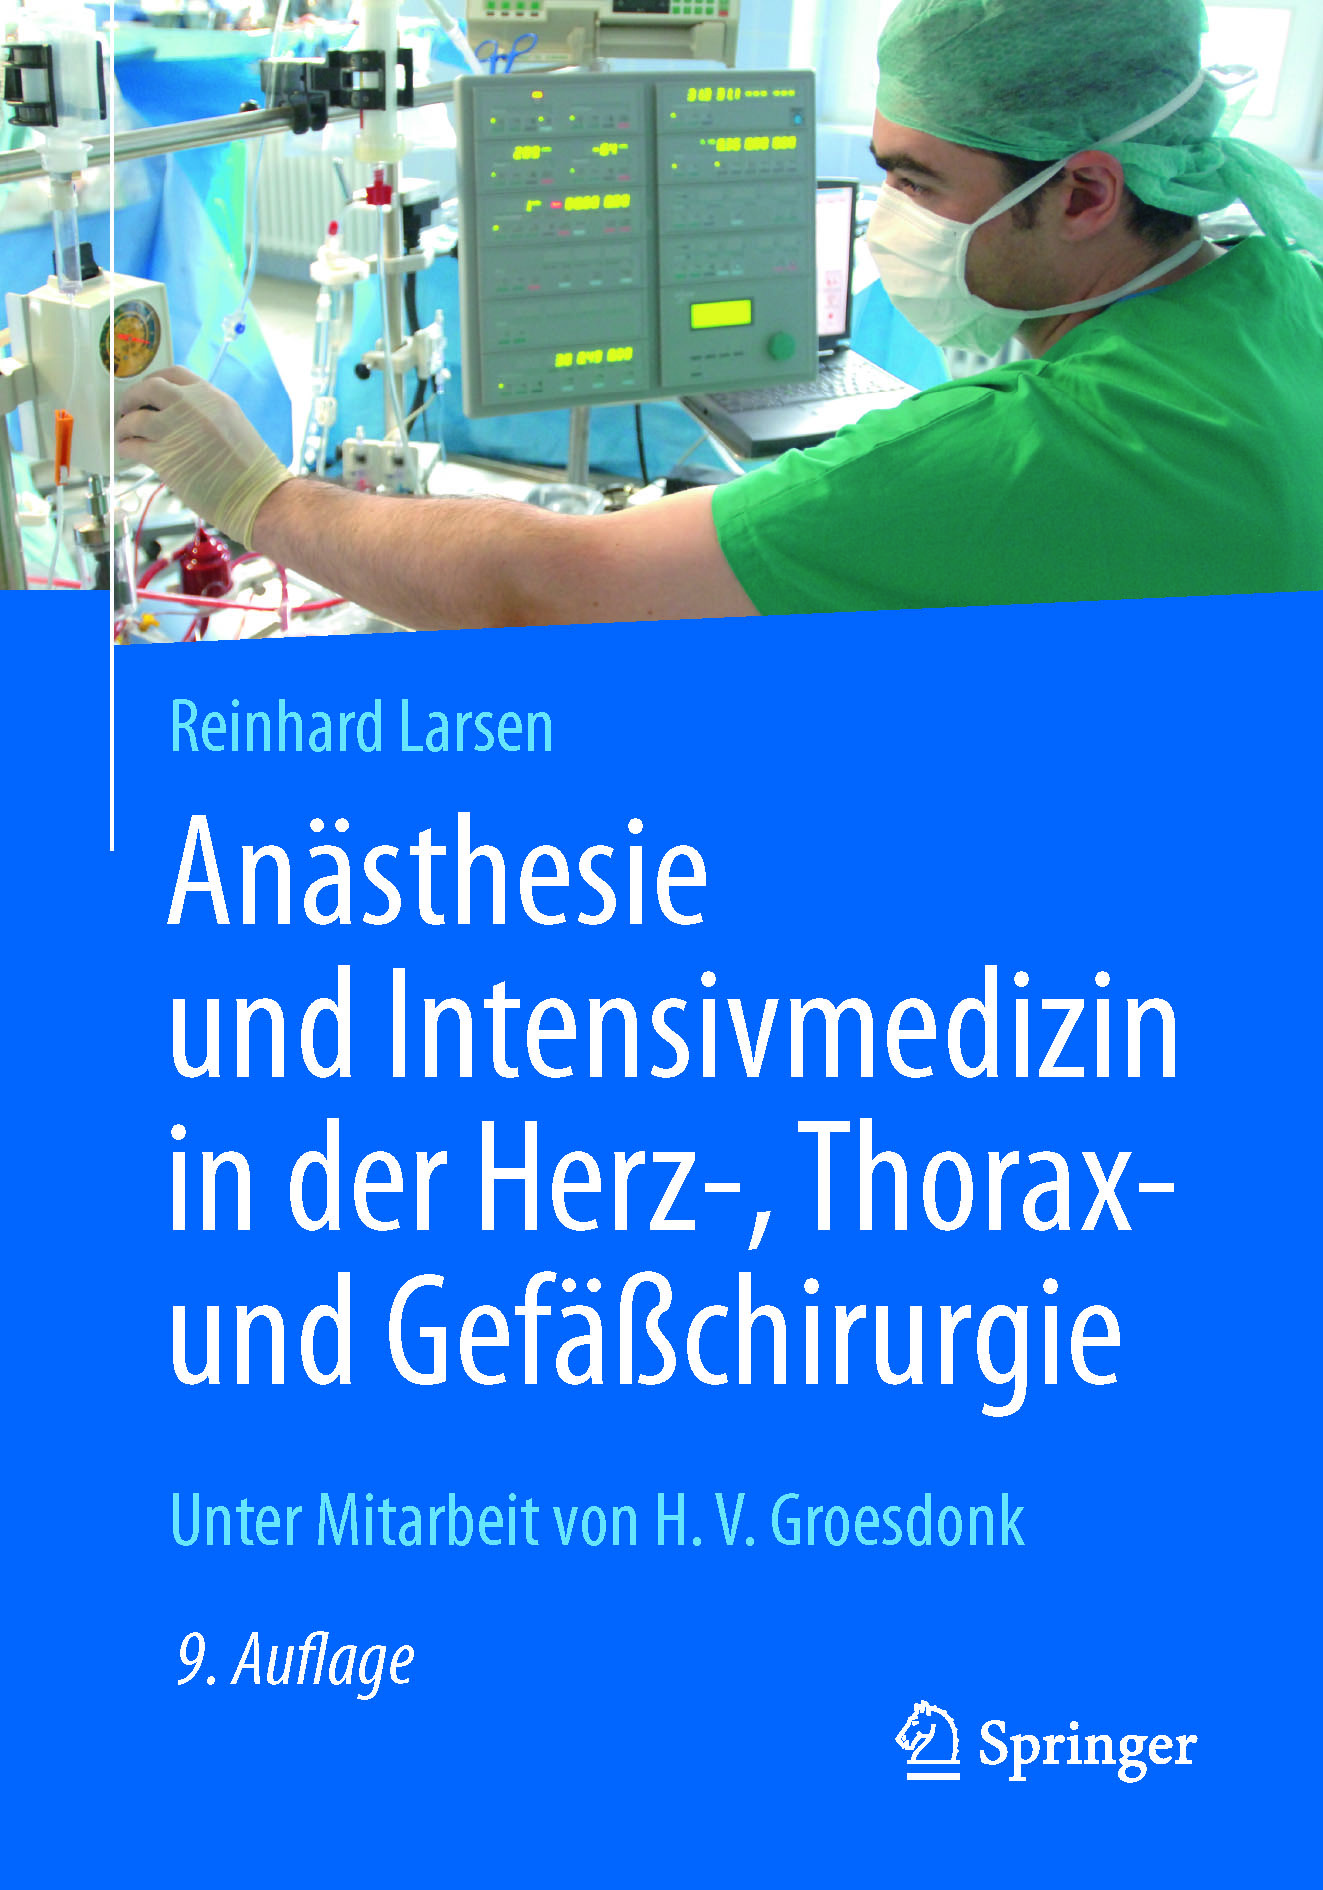 Larsen, Reinhard - Anästhesie und Intensivmedizin in der Herz-, Thorax- und Gefäßchirurgie, ebook